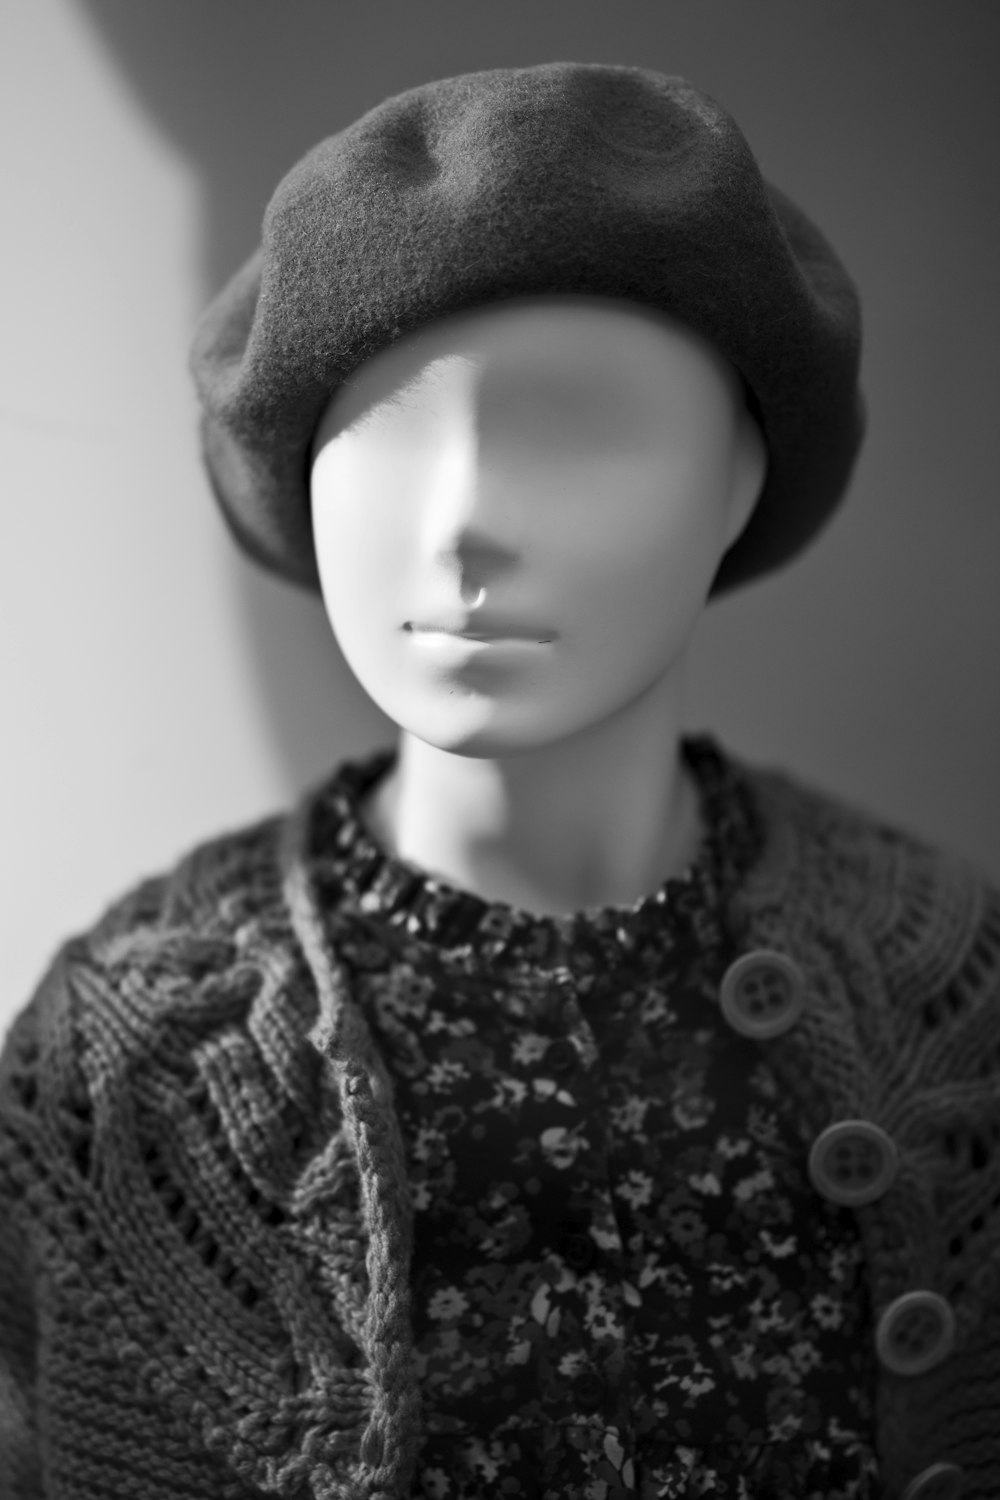 니트 모자와 니트 셔츠를 입은 여자의 그레이스케일 사진